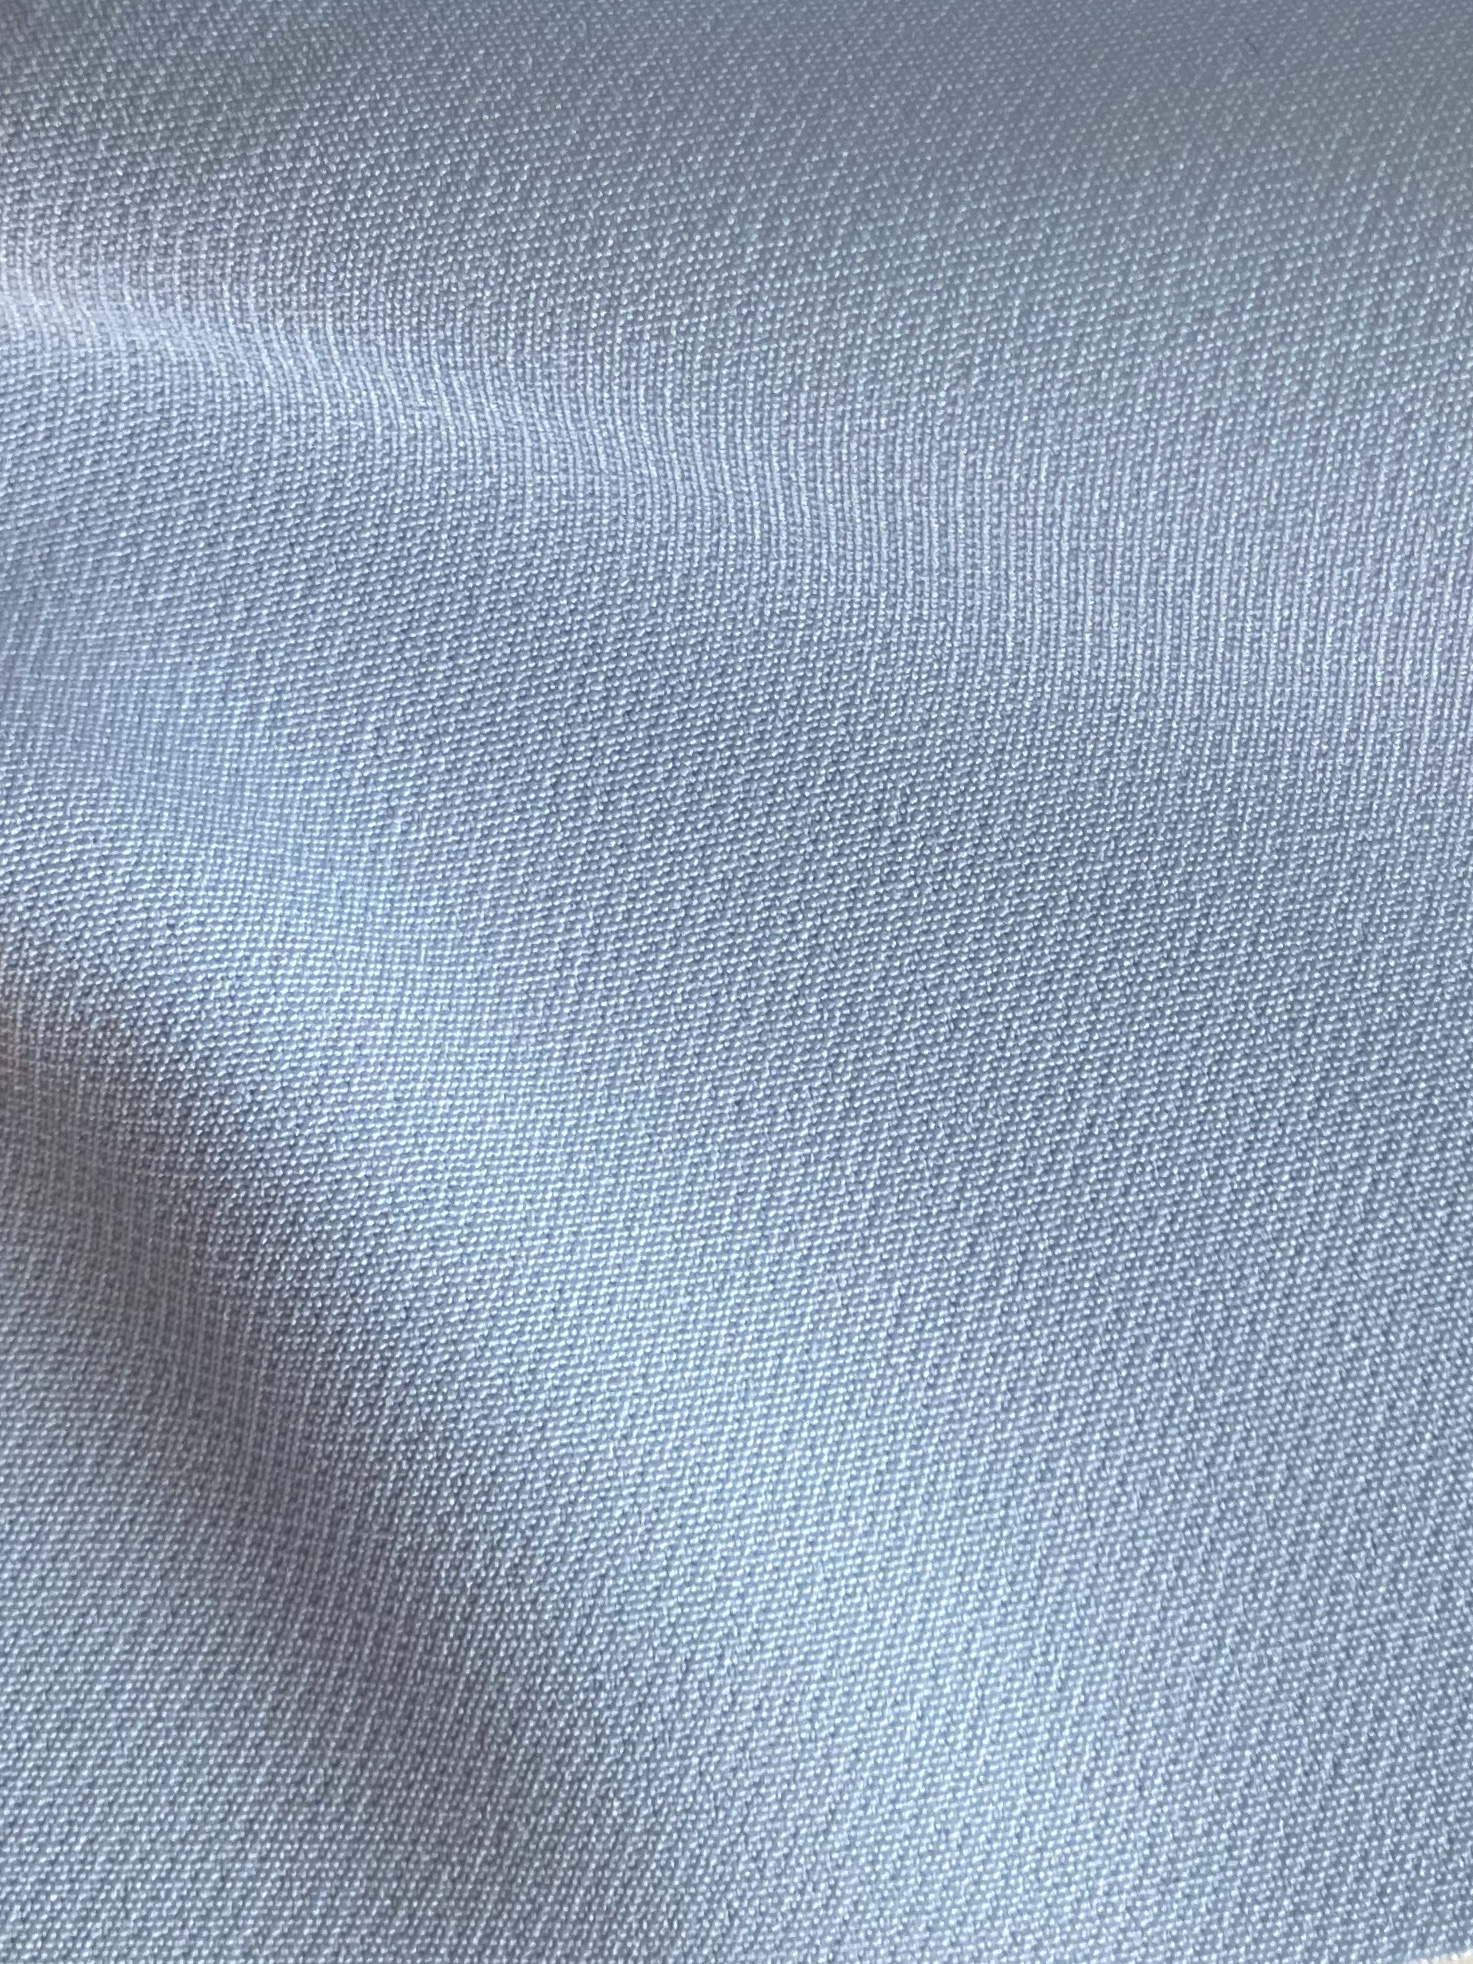 Drastisk officiel springvand STOF P FINE TWILL # 701 CERULEAN | Textil